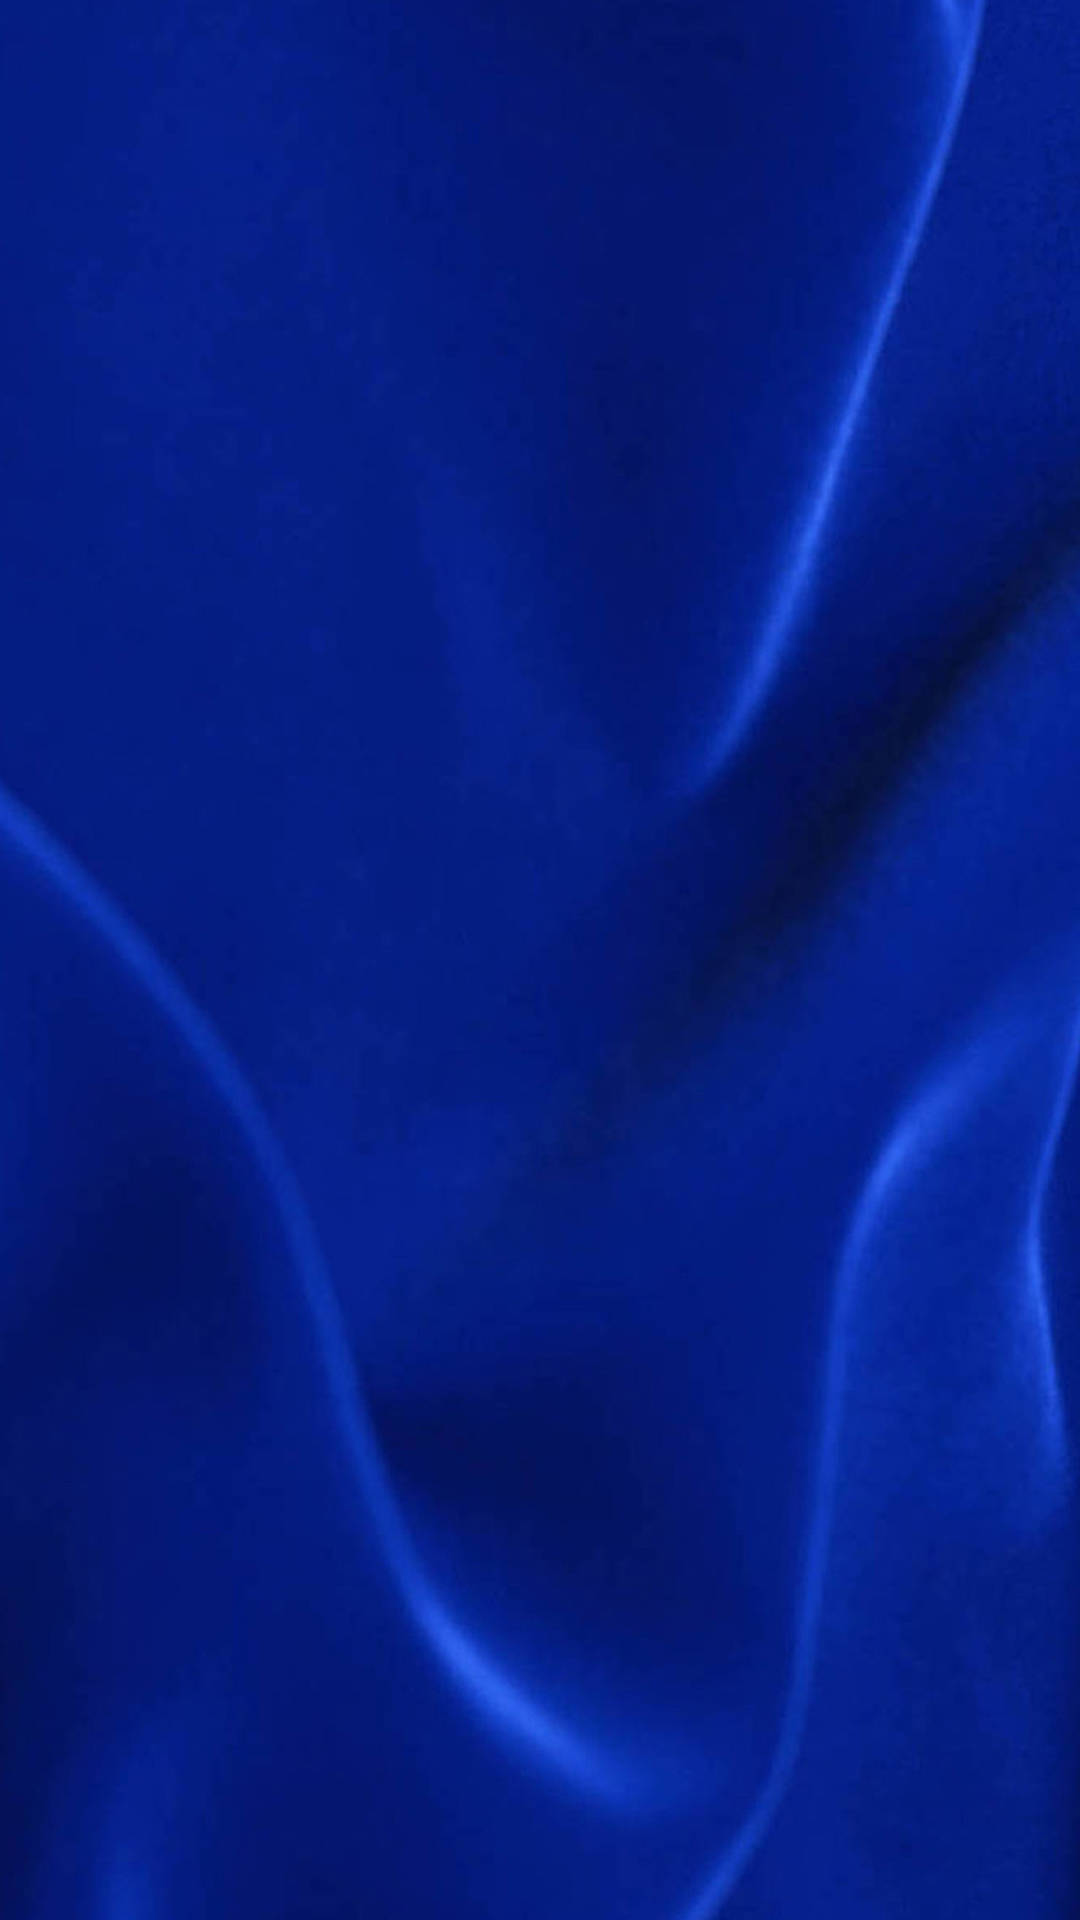 Wavy Blue Texture Background